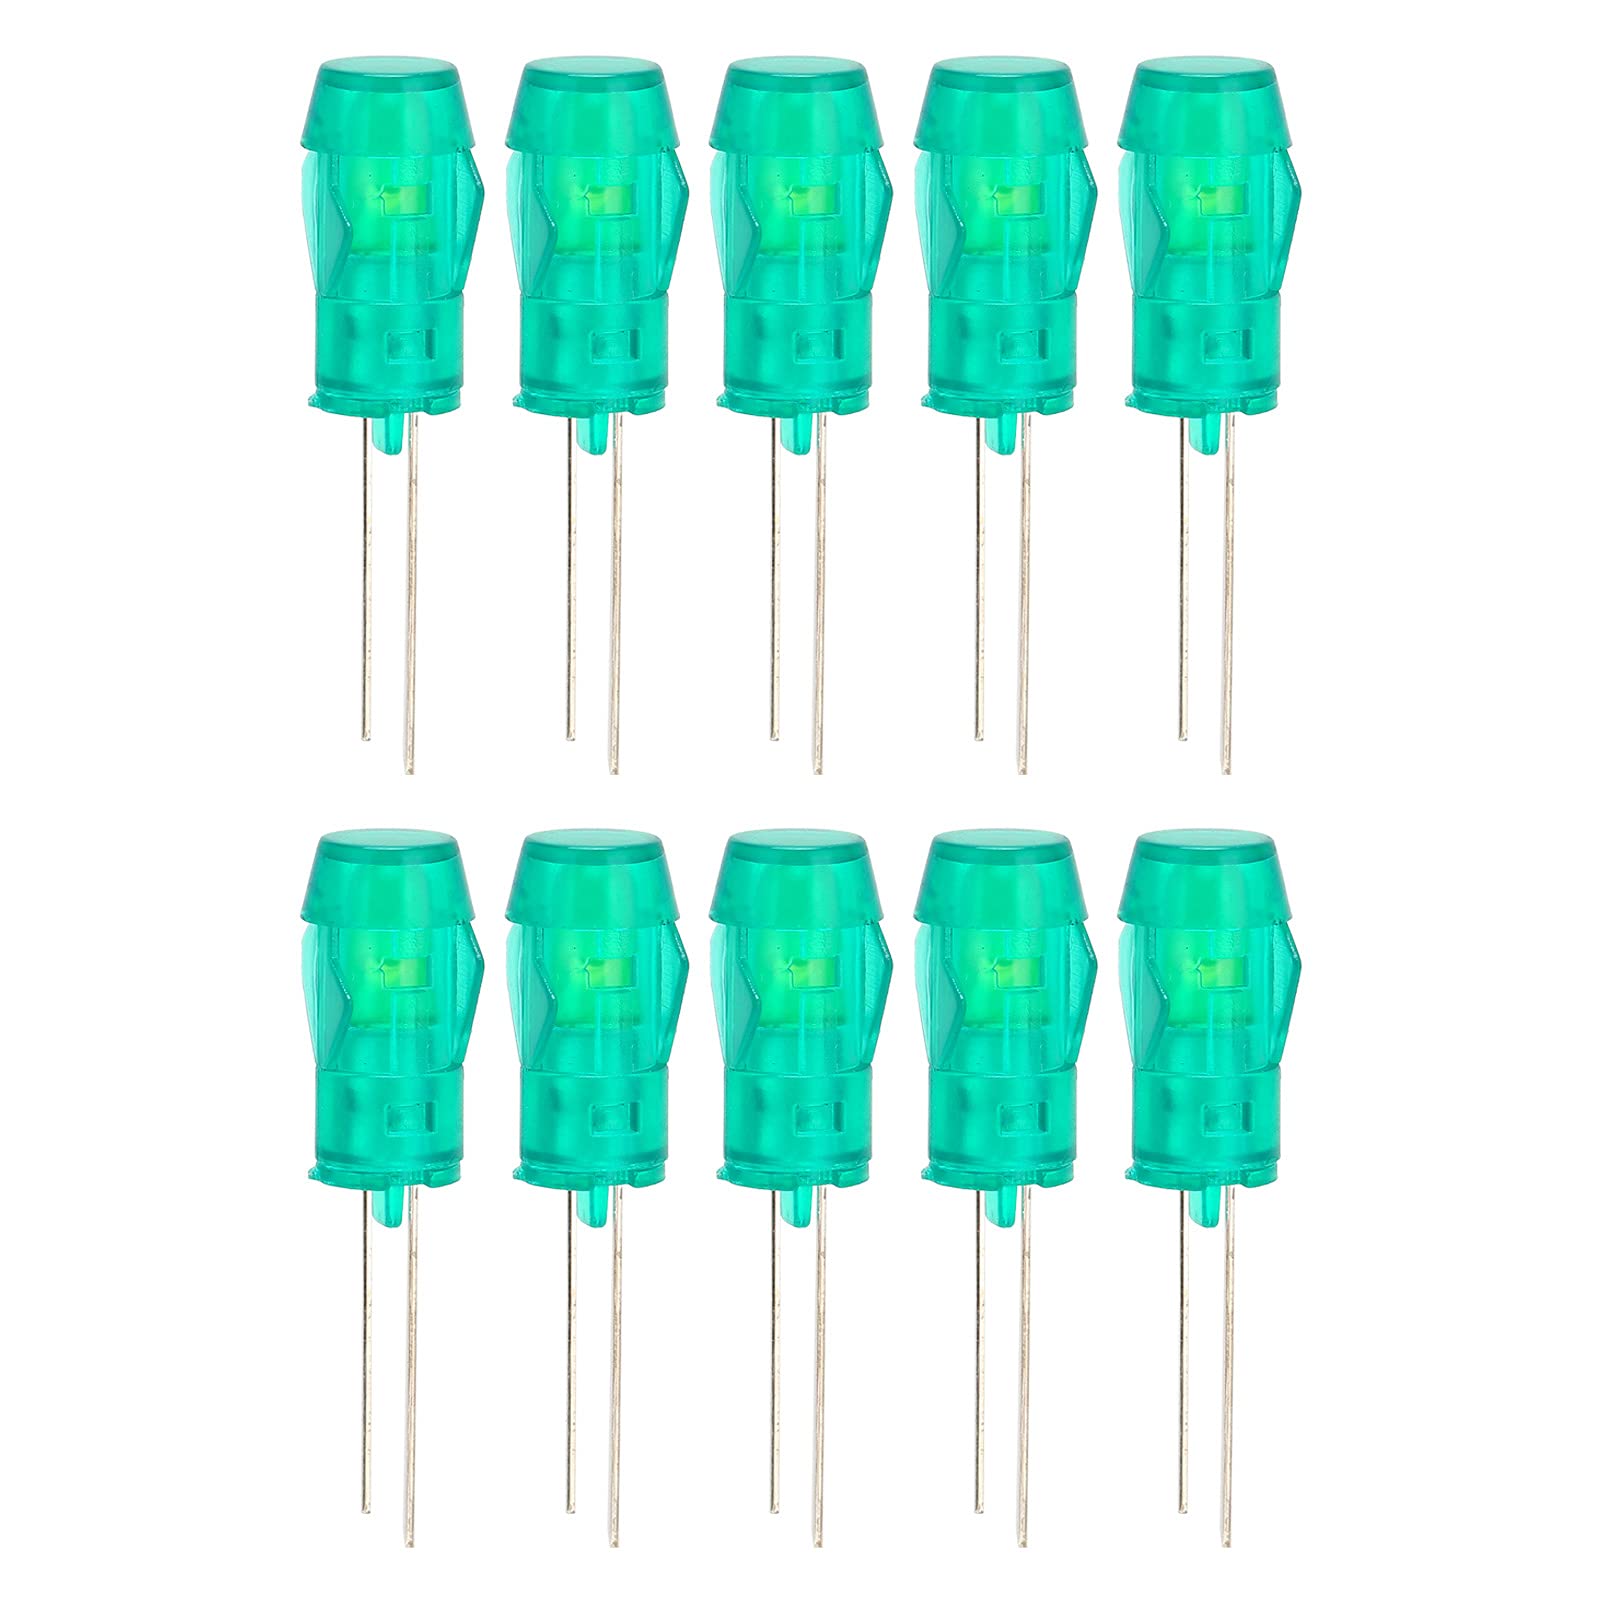 EternalCrafts Tasten Blinker Zubehör LED Kunststoff Halter Blende Halterung für PC Blinkerleuchte, 20 Stück, 5 mm grün, Flugzeug-Lampenschirm-Komponente von EternalCrafts